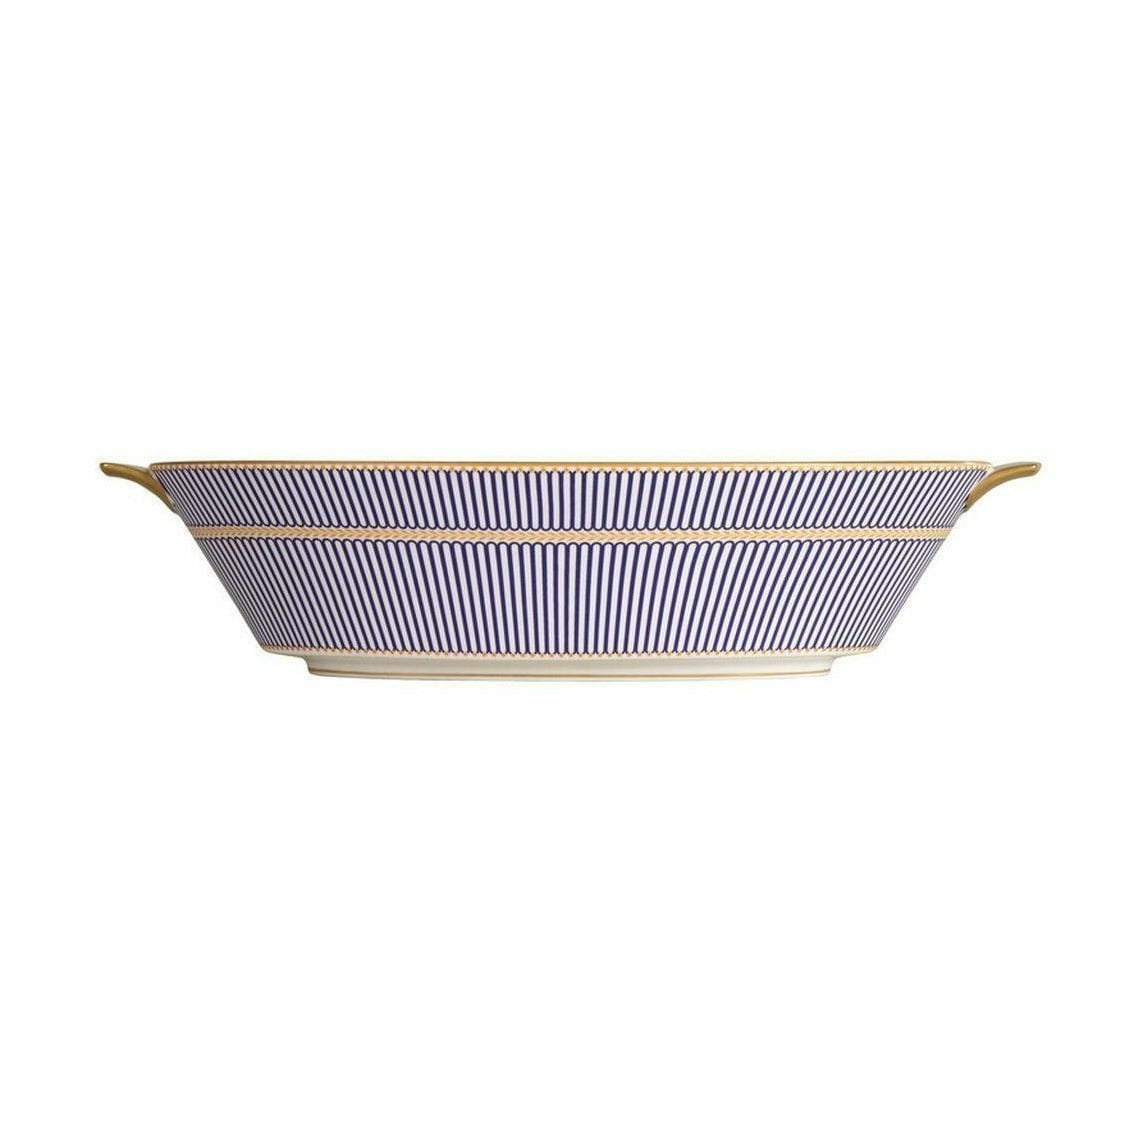 Wedgwood Anthemion Blue Oval serveringsskål, W: 34 cm